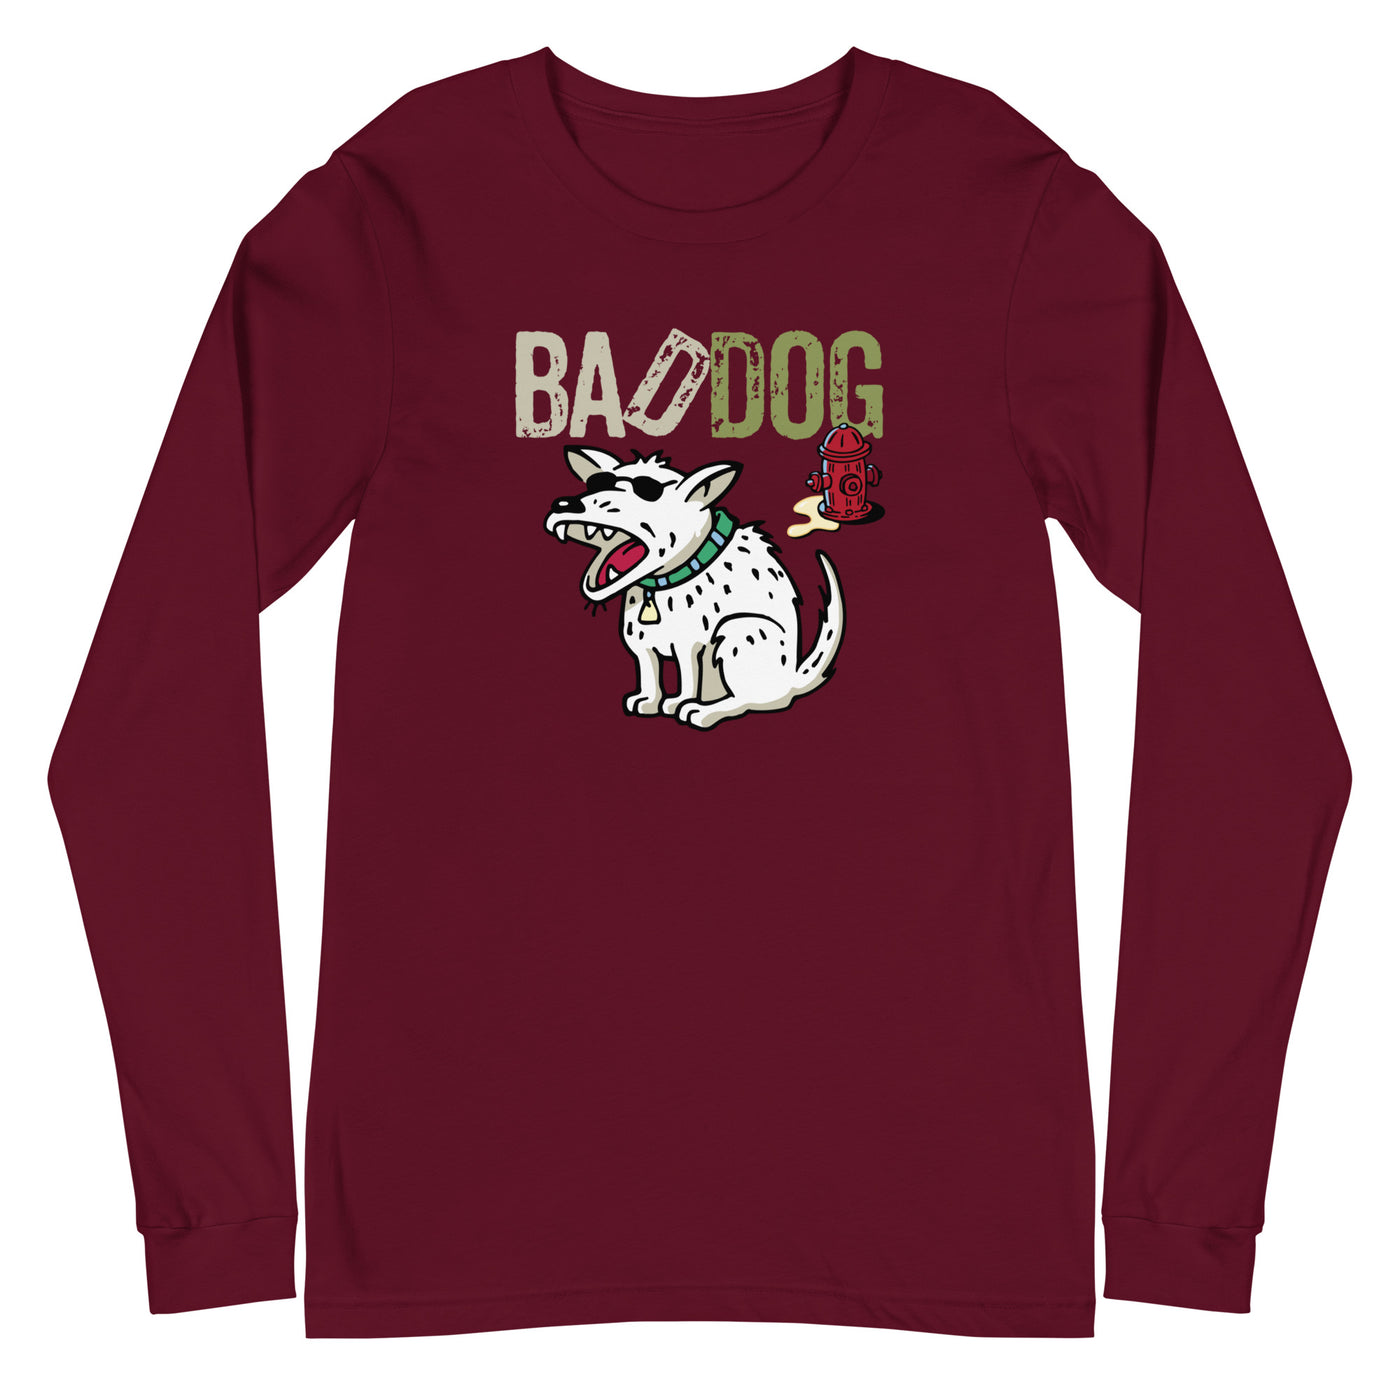 Bad Dog Whiz - Long Sleeve T-Shirt